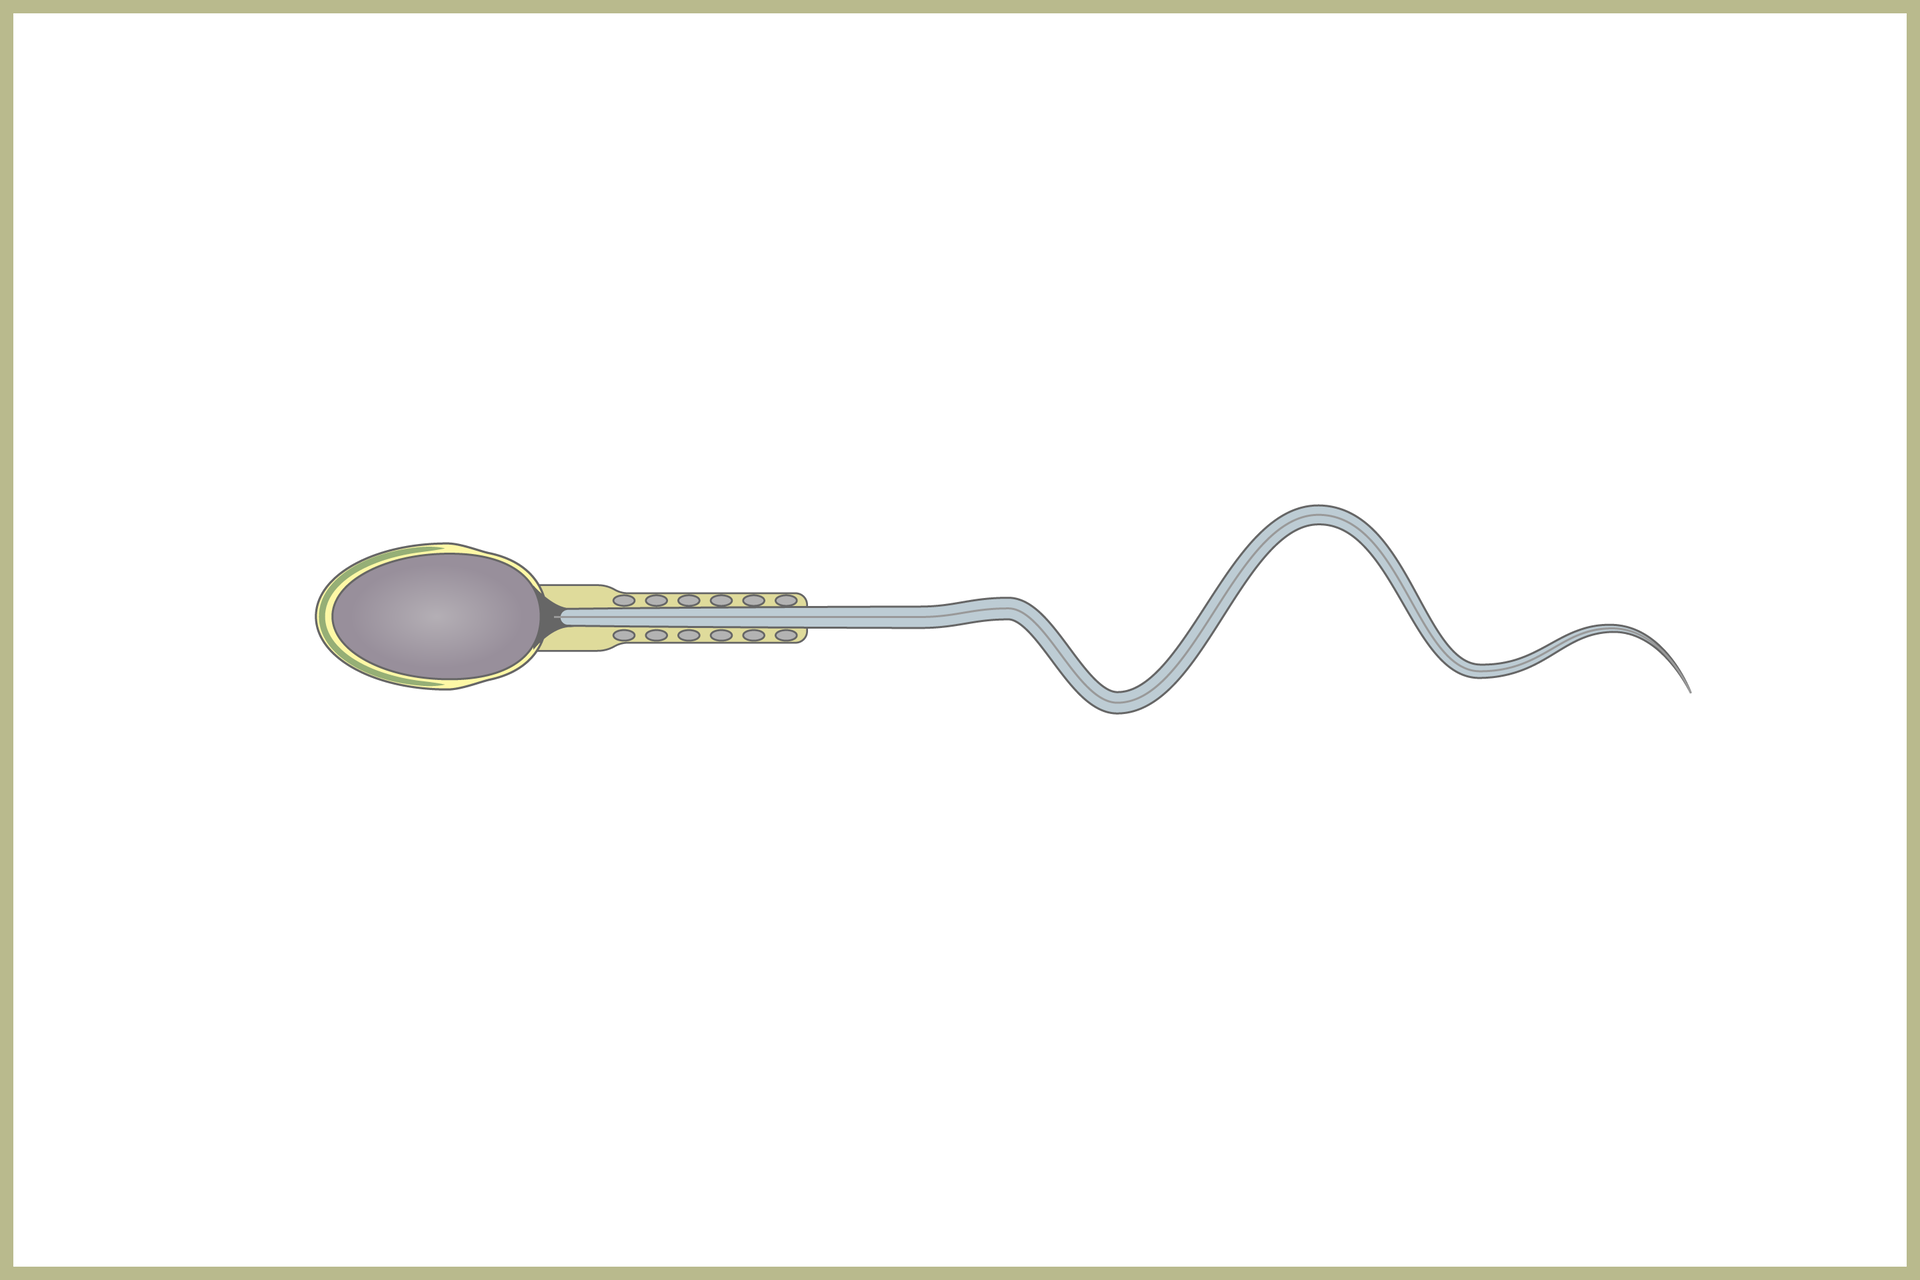 Ilustracja przedstawia plemnik człowieka. Ma on wydłużony kształt. Jajowata główka po lewej stronie przechodzi w cieńszą szyjkę i wstawkę z licznymi mitochondriami. W prawo ciągnie się długa witka.